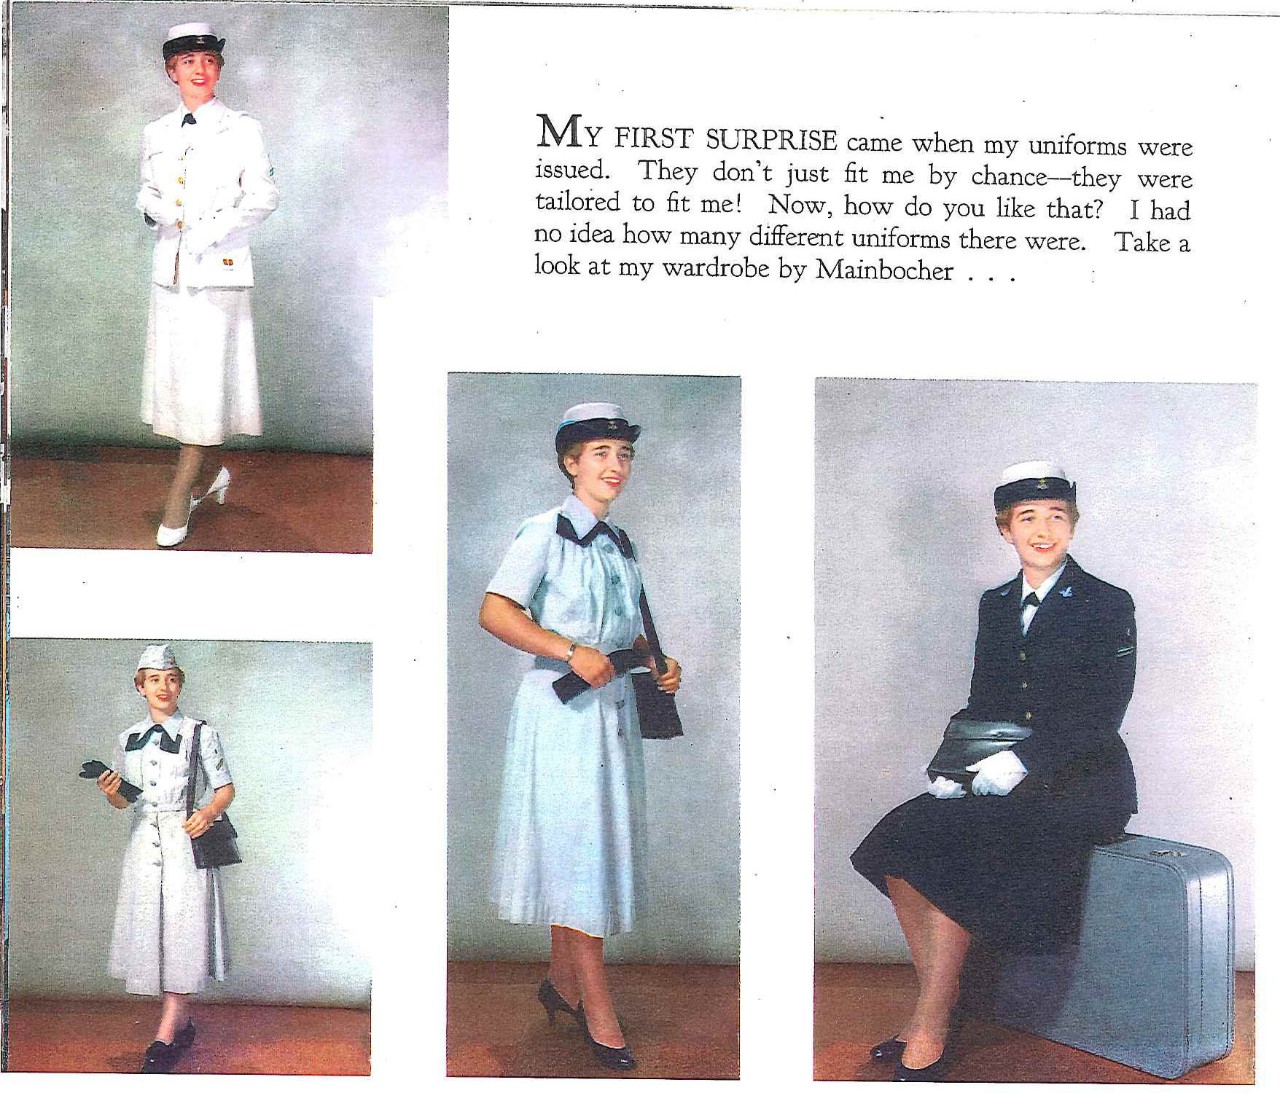 Different uniforms